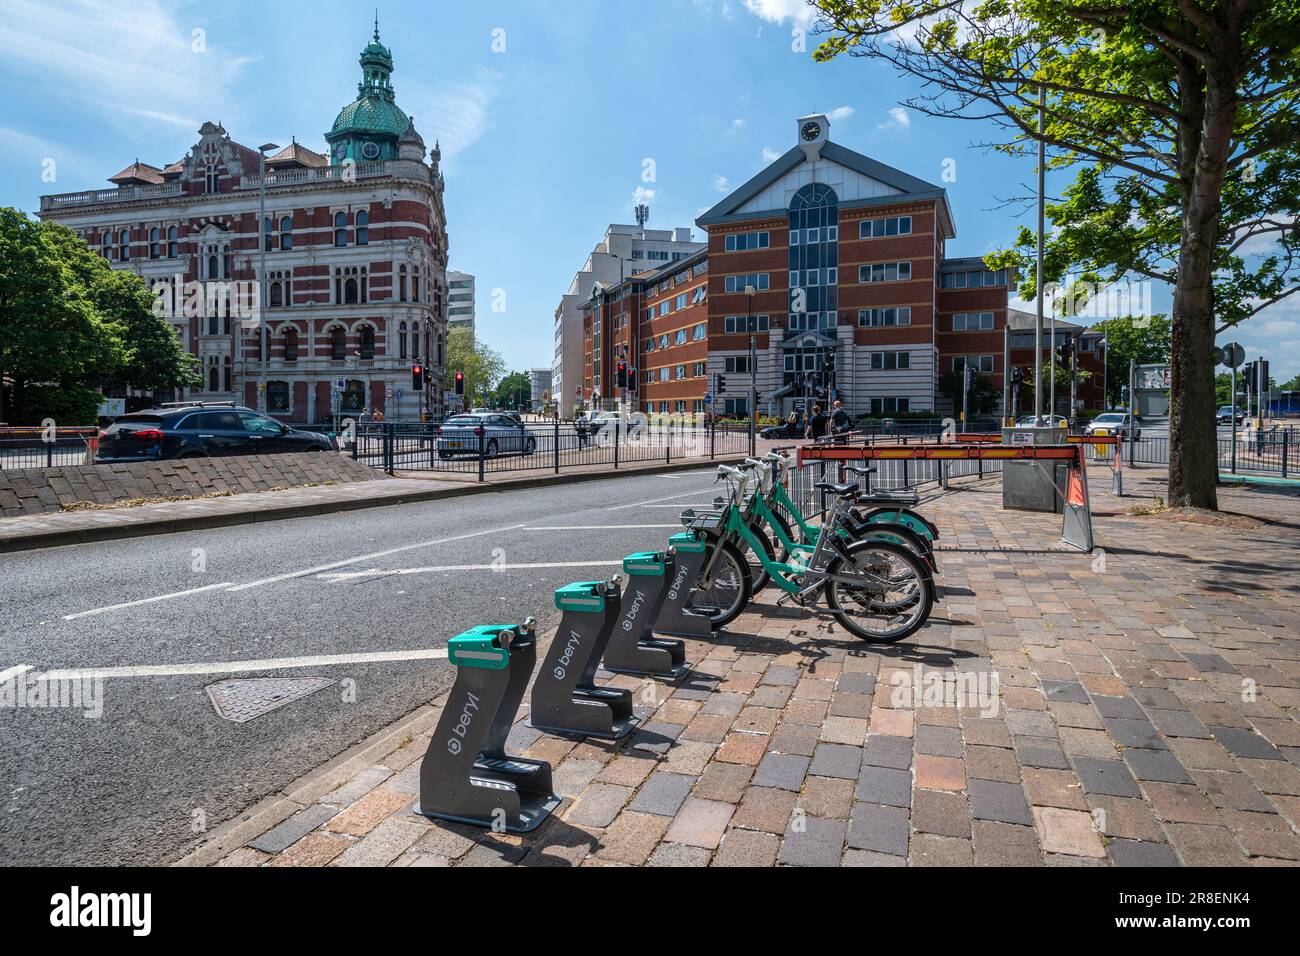 Rack de vélos électriques, location de vélos, transport écologique dans le centre-ville de Portsmouth, Hampshire, Angleterre, Royaume-Uni Banque D'Images